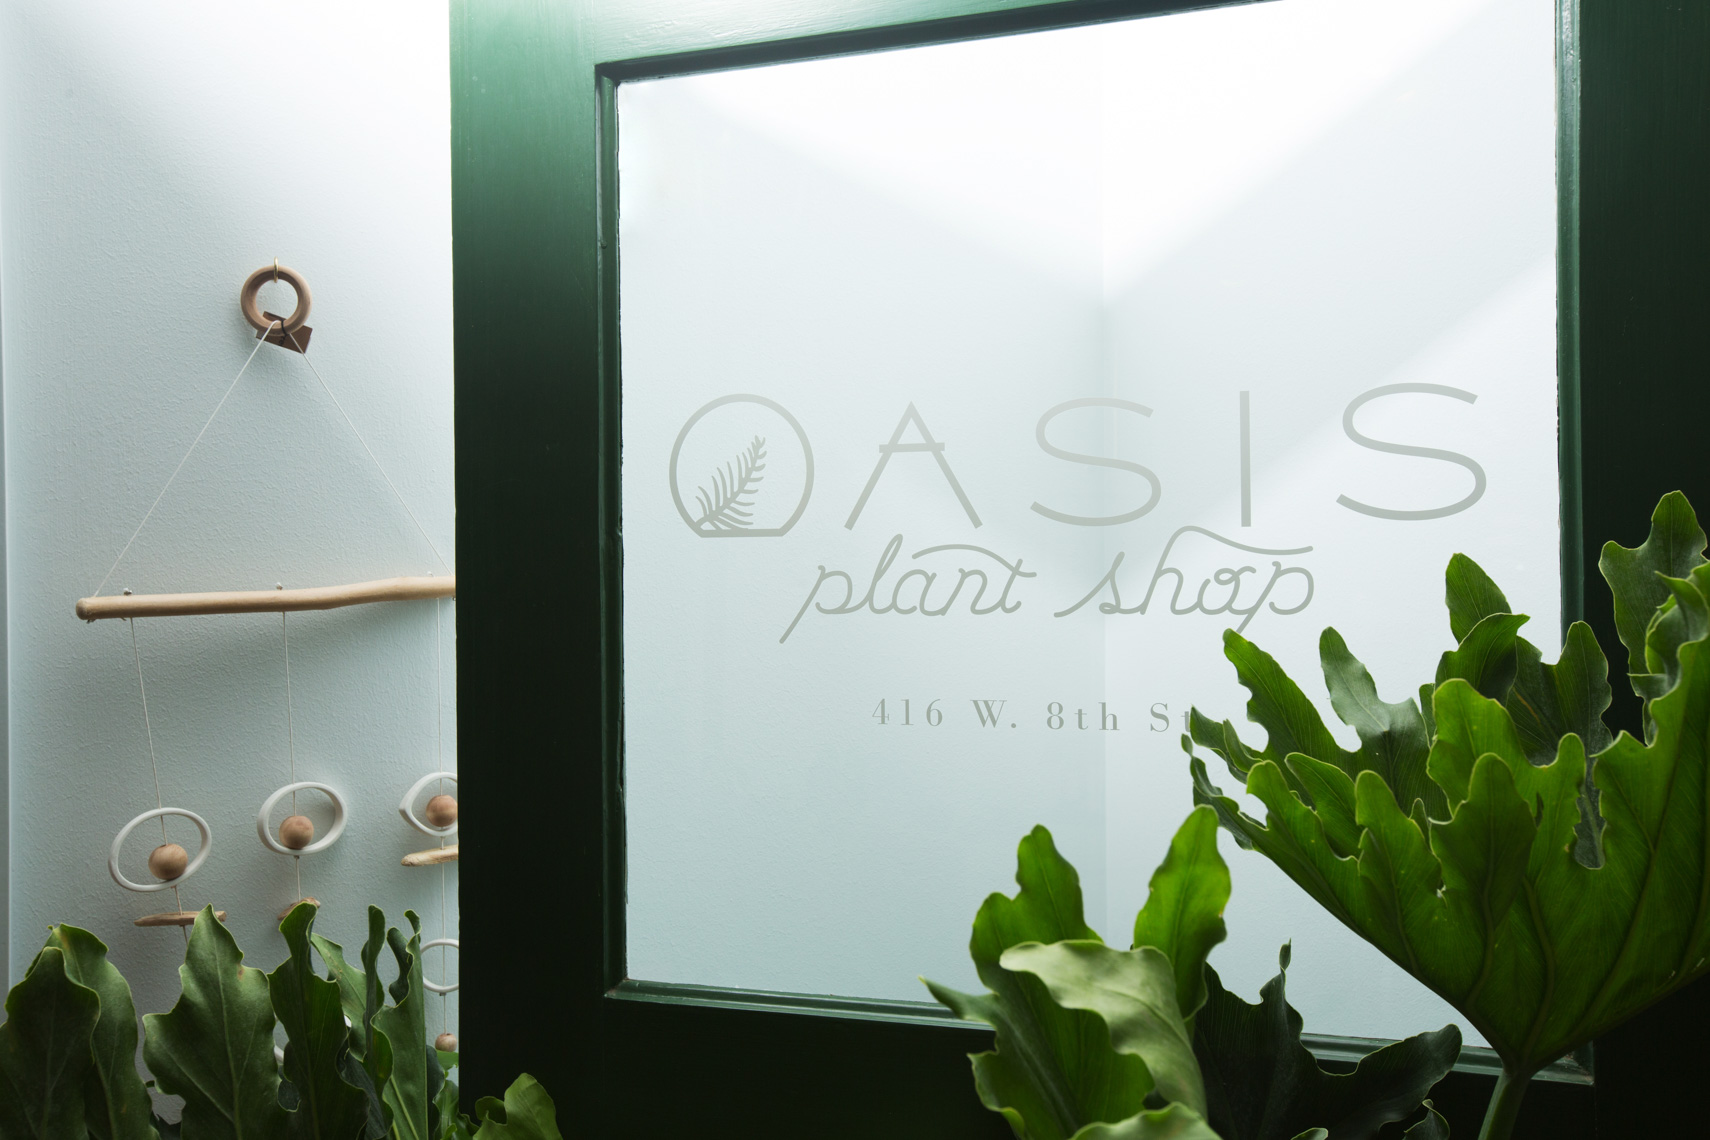 Oasis Plant Shop